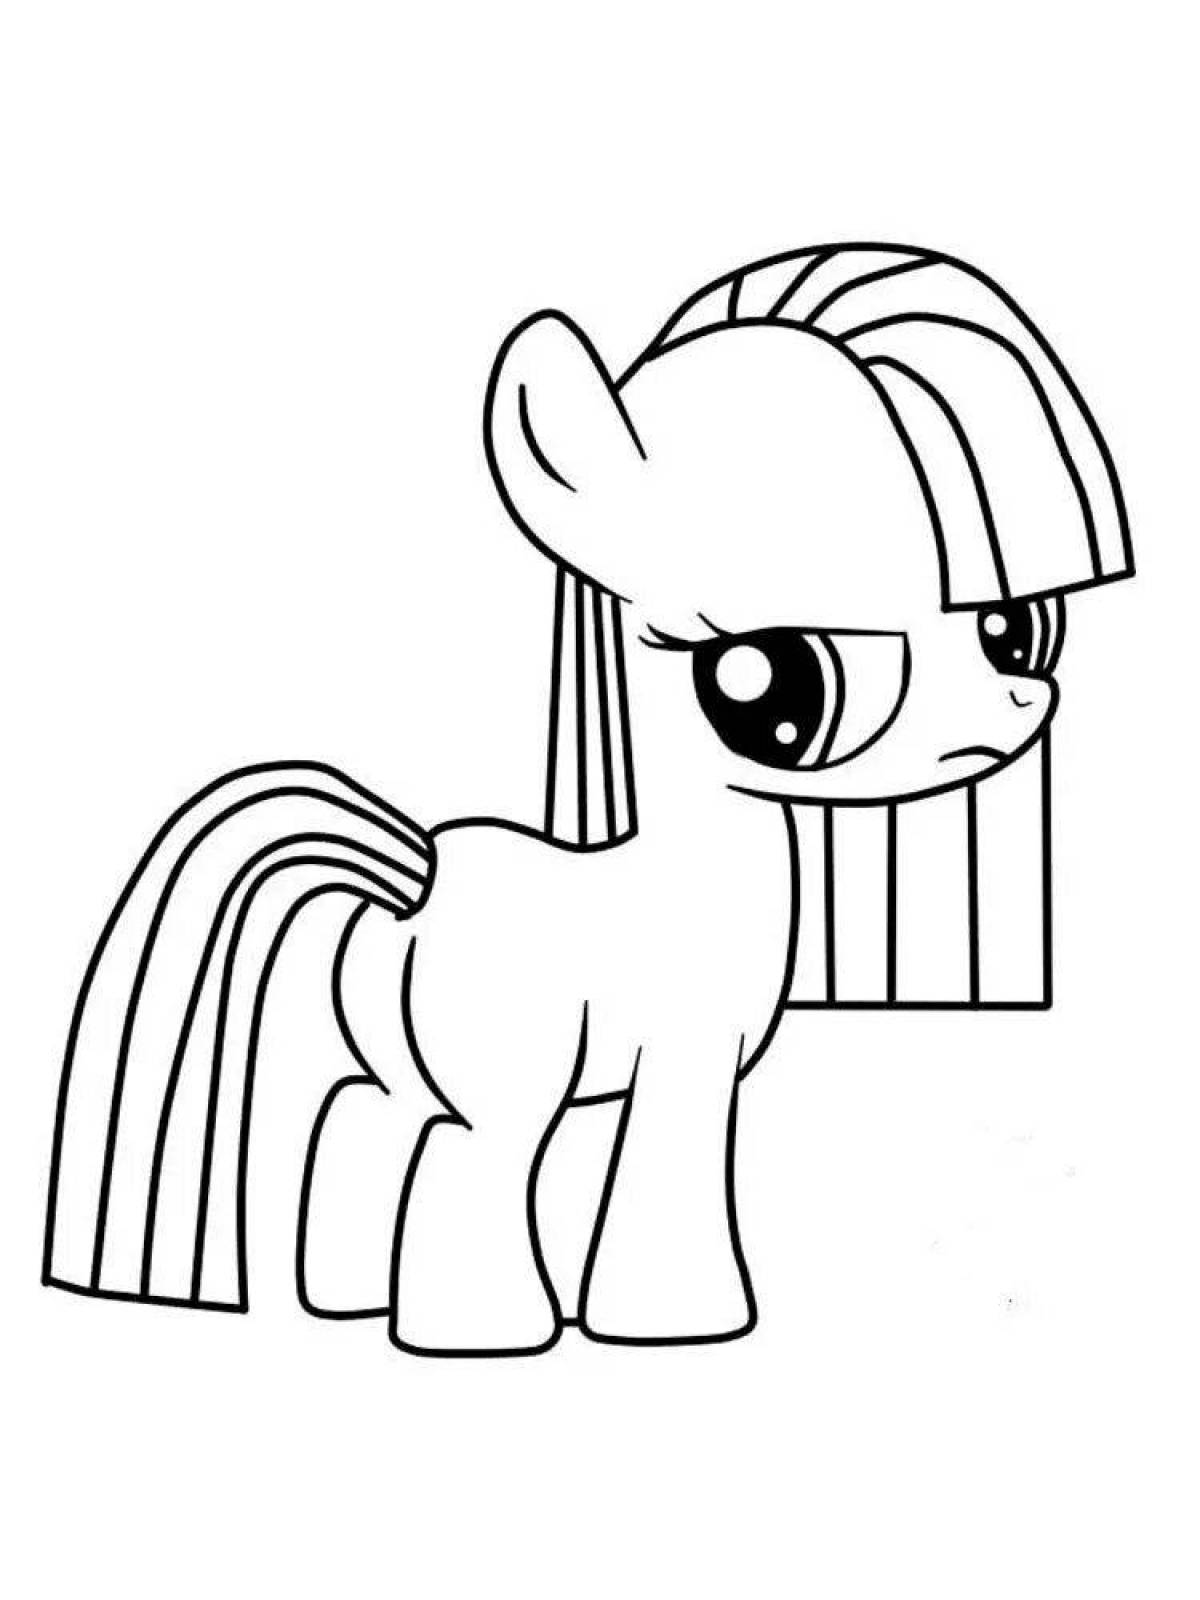 My Little Pony: истории из жизни, советы, новости, юмор и картинки — Лучшее, страница 4 | Пикабу